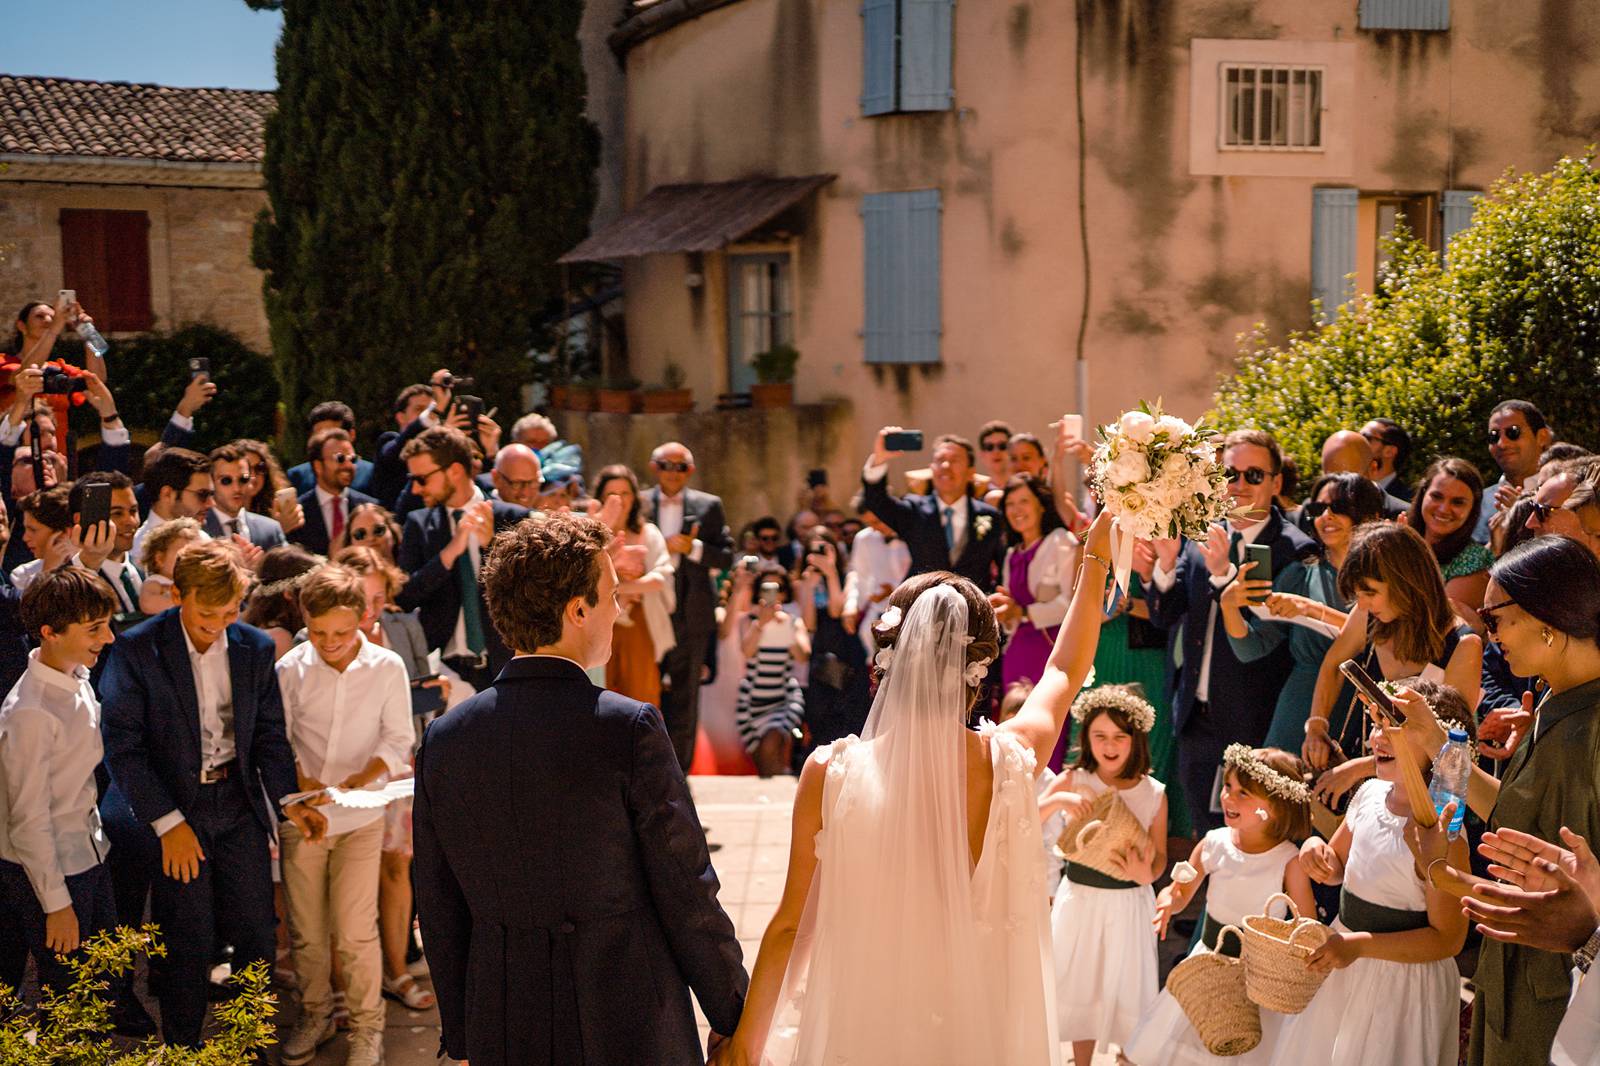 Un teaser du mariage religieux de Delphine et Edouard à Lourmarin puis au Château d'Arnajon en Provence sous tente. Alexandre Roschewitz, photographe mariage.